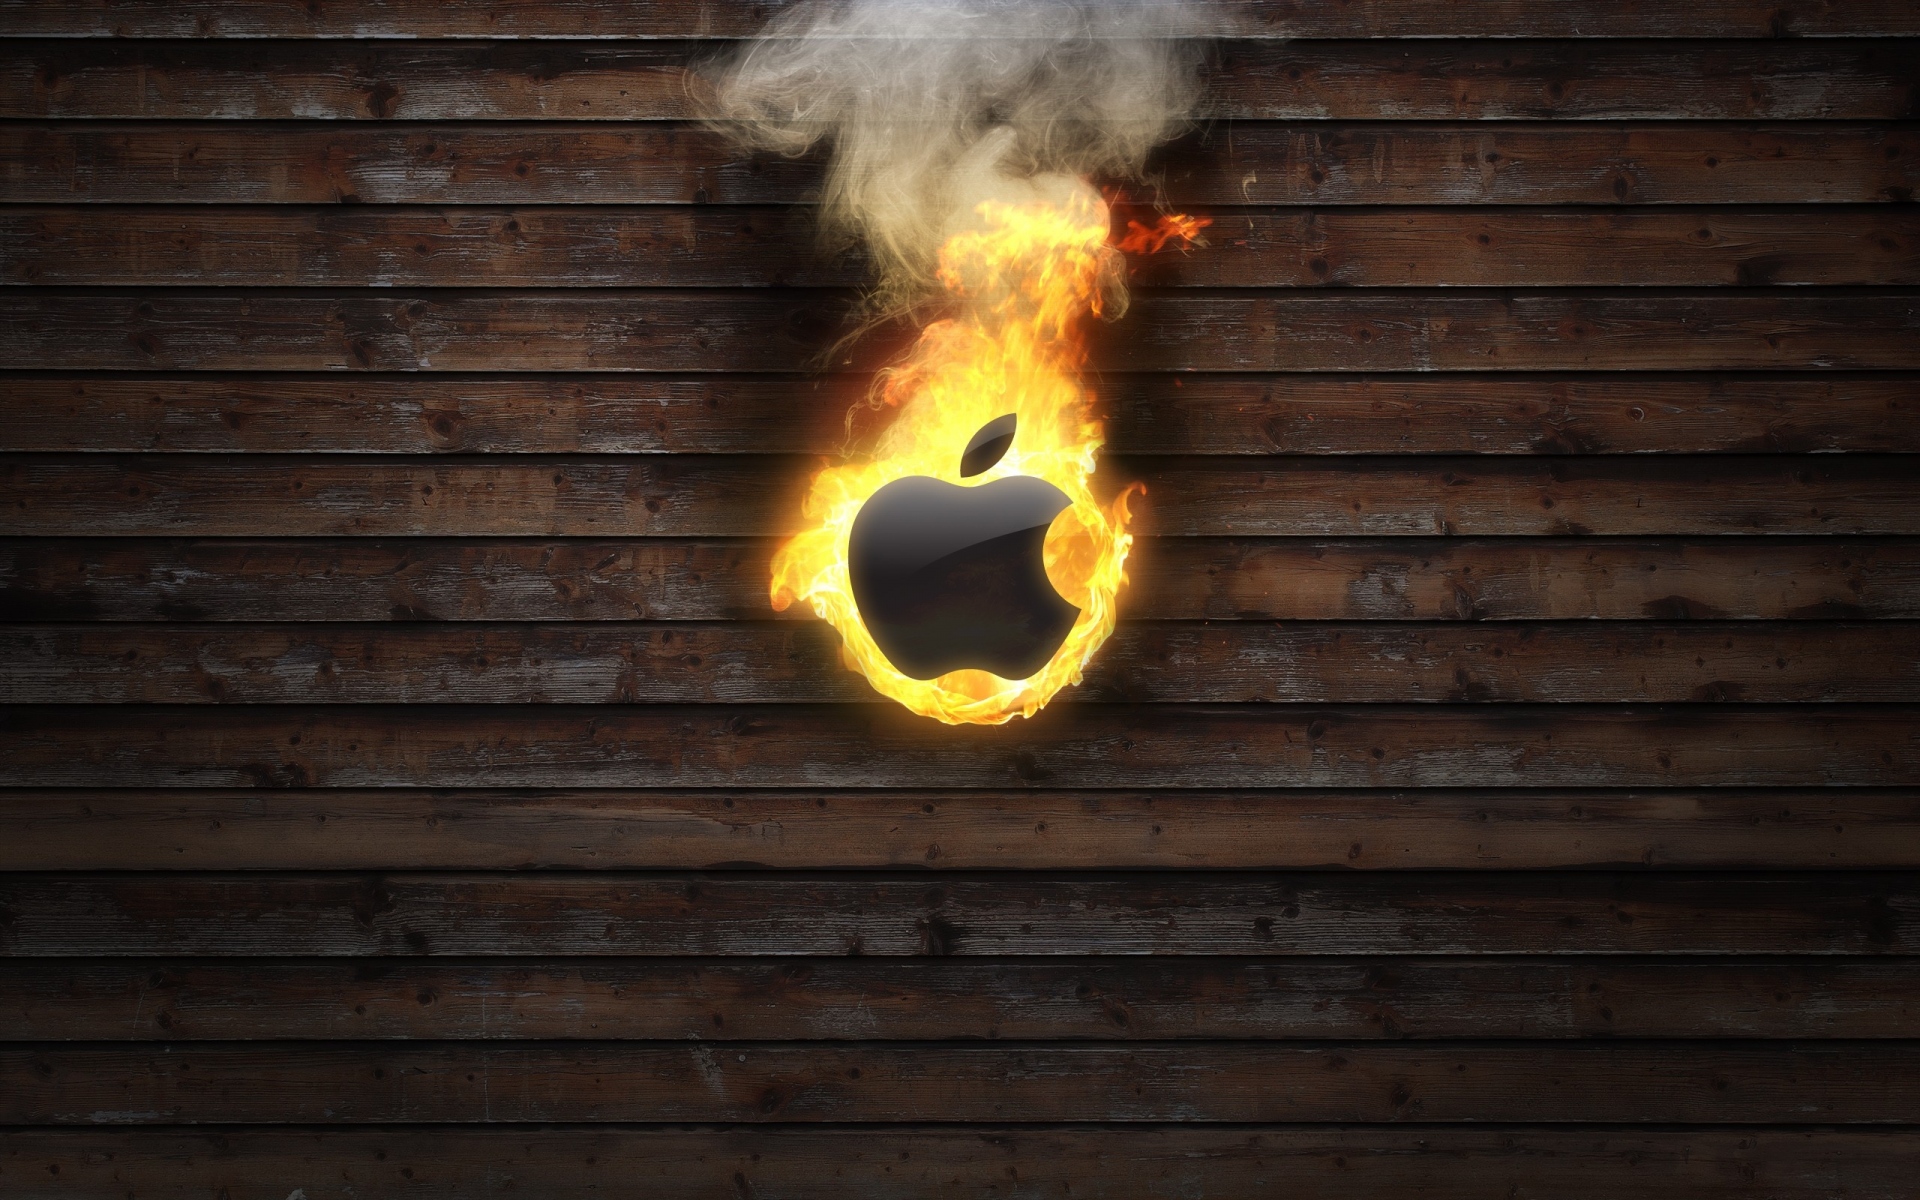 Картинки Огонь, пламя, дерево, фон, яблоко, mac фото и обои на рабочий стол